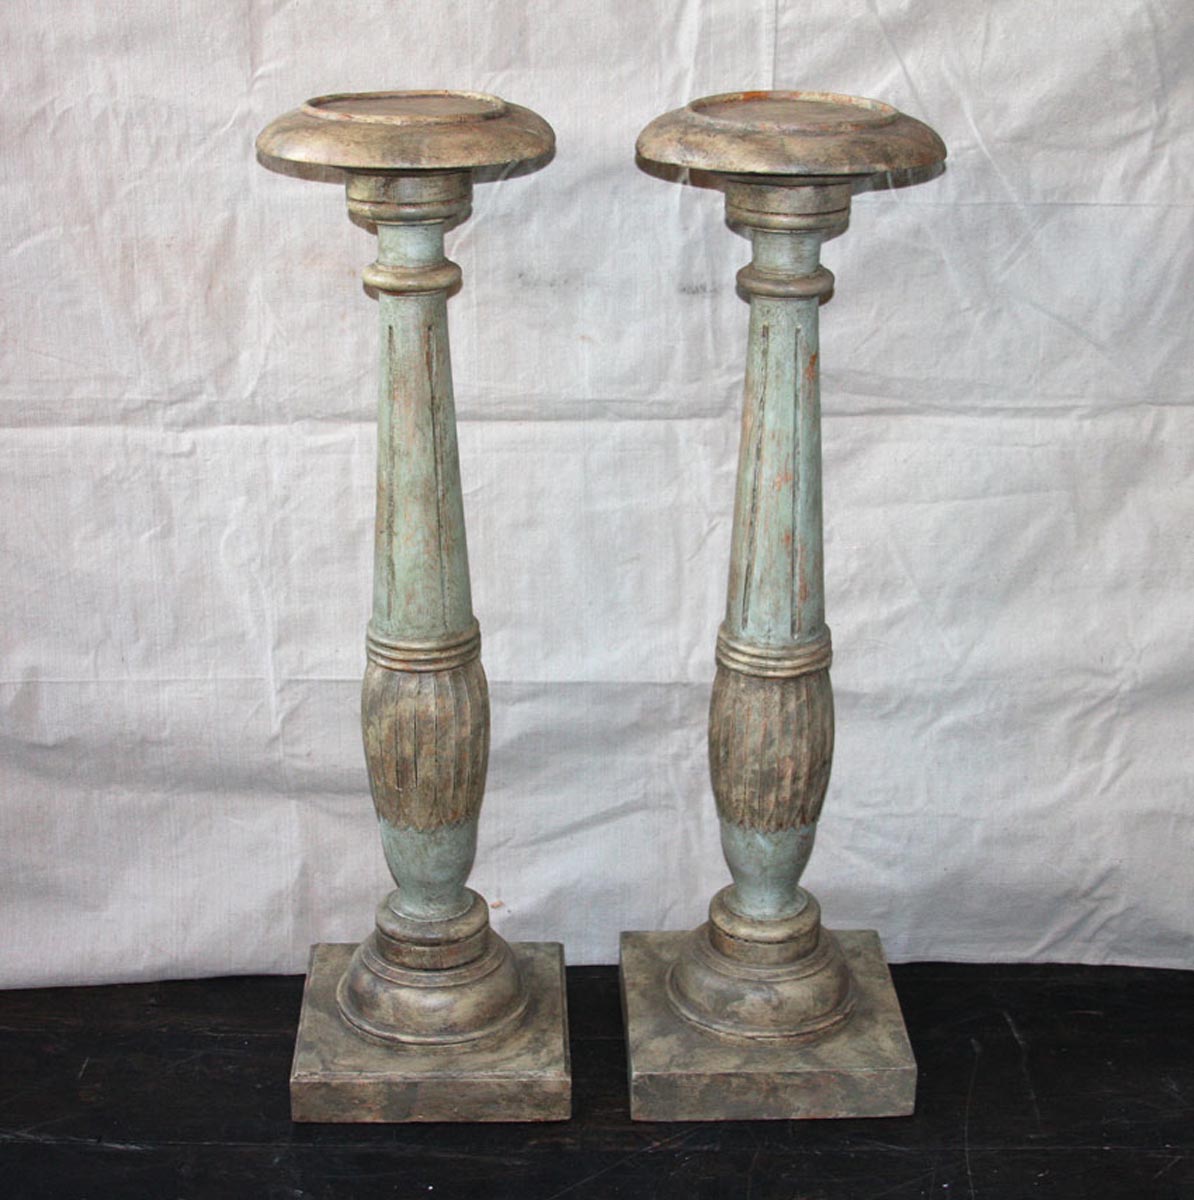 Period Gustavian Wood Pedestals